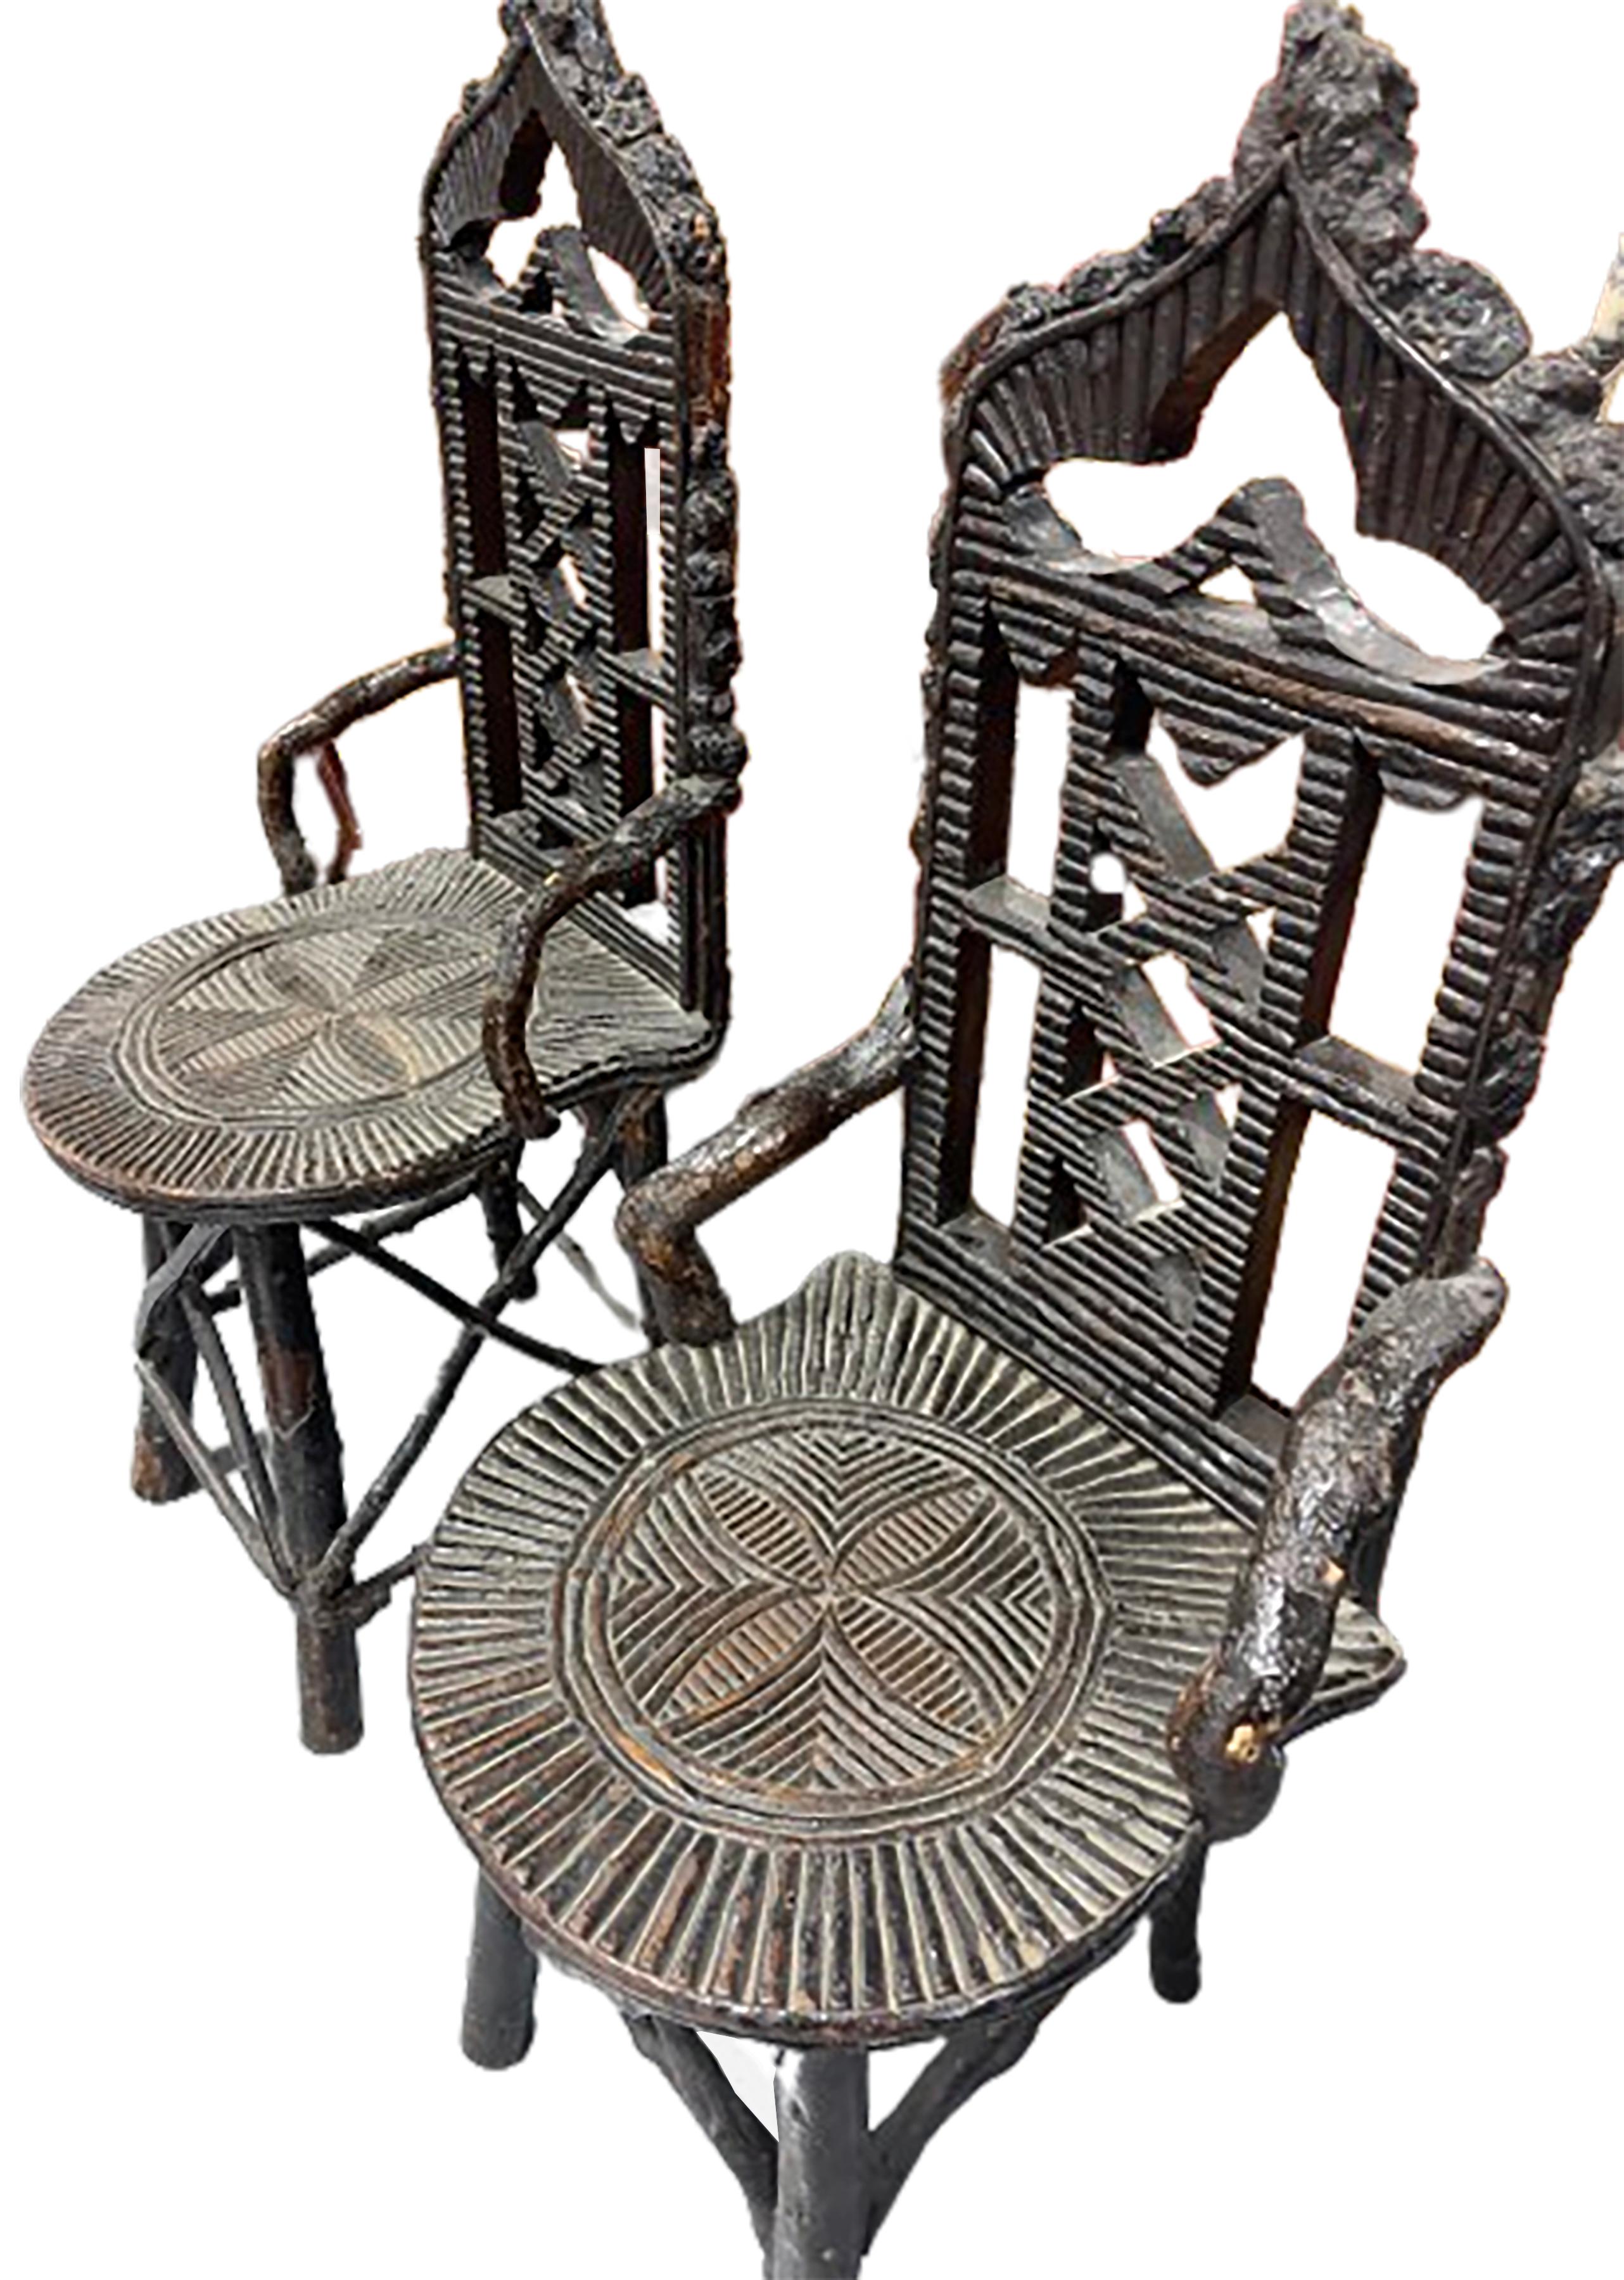 Ein hübsches Paar primitiver antiker Schwarzwaldstühle.  Aufwändig geschnitzte Muster auf der Sitzfläche sowie eine belüftete Rückenlehne. Walnuss. 
 
In gutem Zustand. Leichte alters- und gebrauchsbedingte Abnutzung.  

Dieses Paar Stühle würde